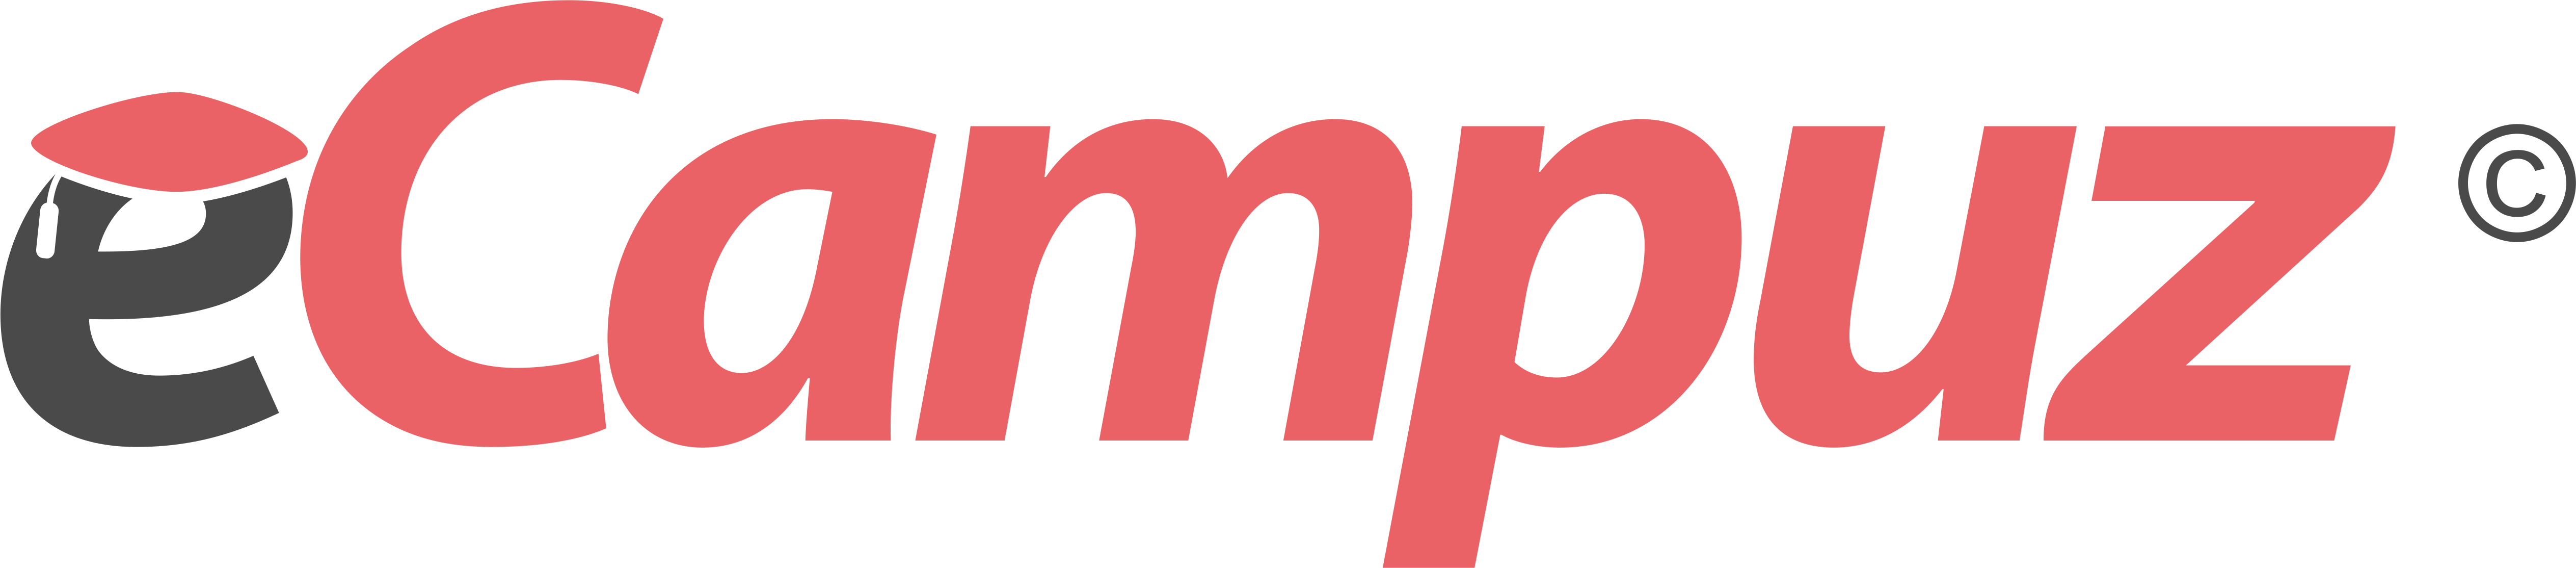 Logo eCampuz PNG HD Color.png